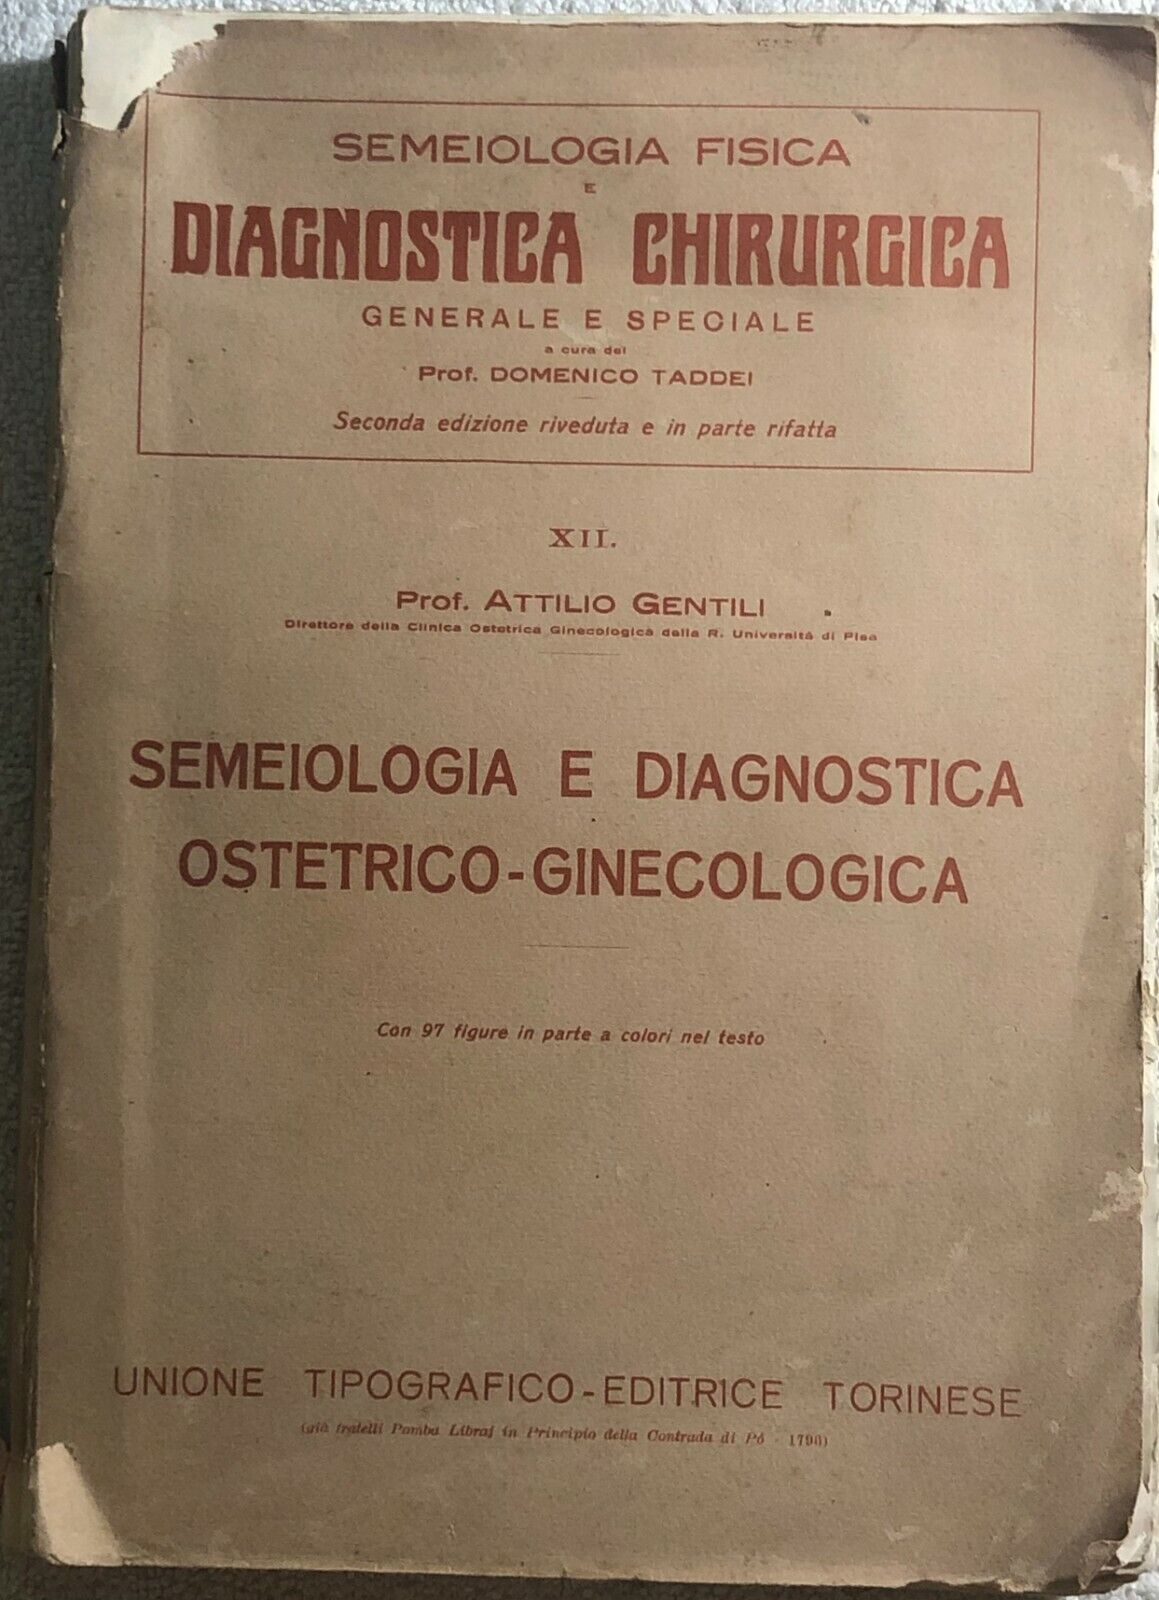 Semeiologia fisica e diagnostica chirurgica vol. XII di Prof. Attilio Gentili,  